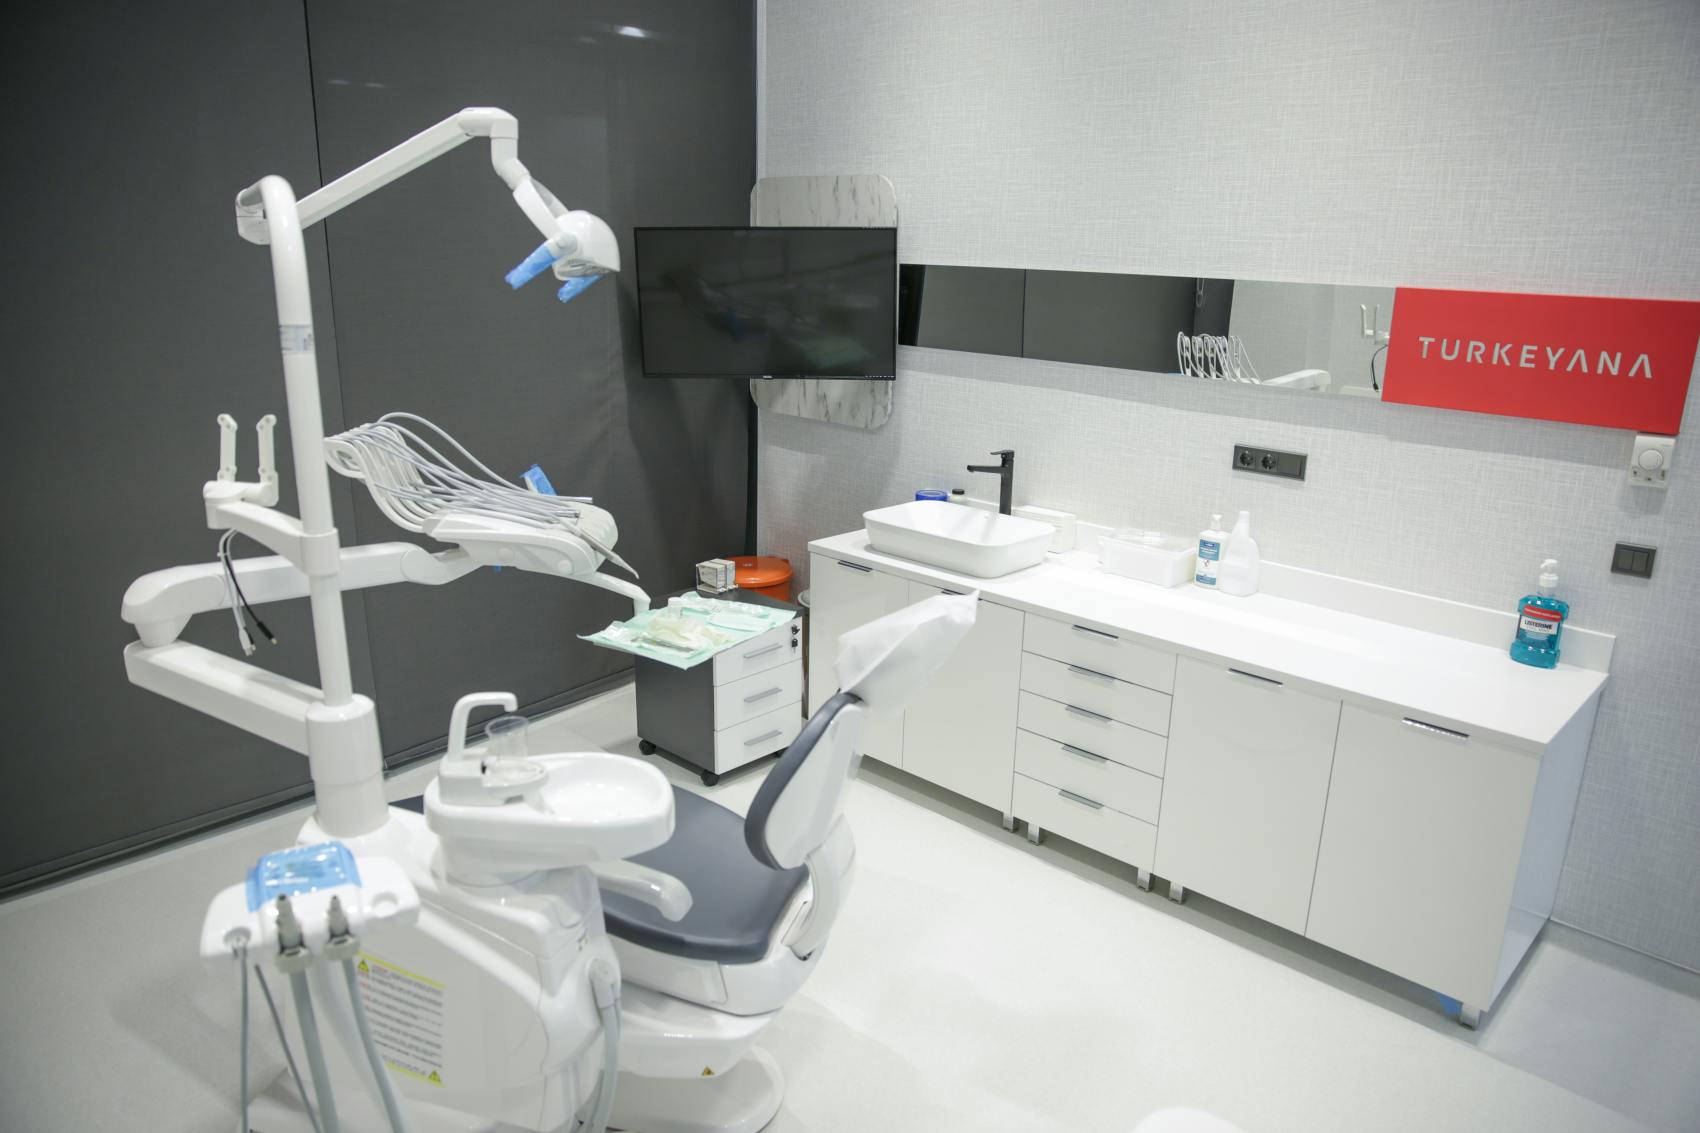 Turkeyana Clinic Operation Room